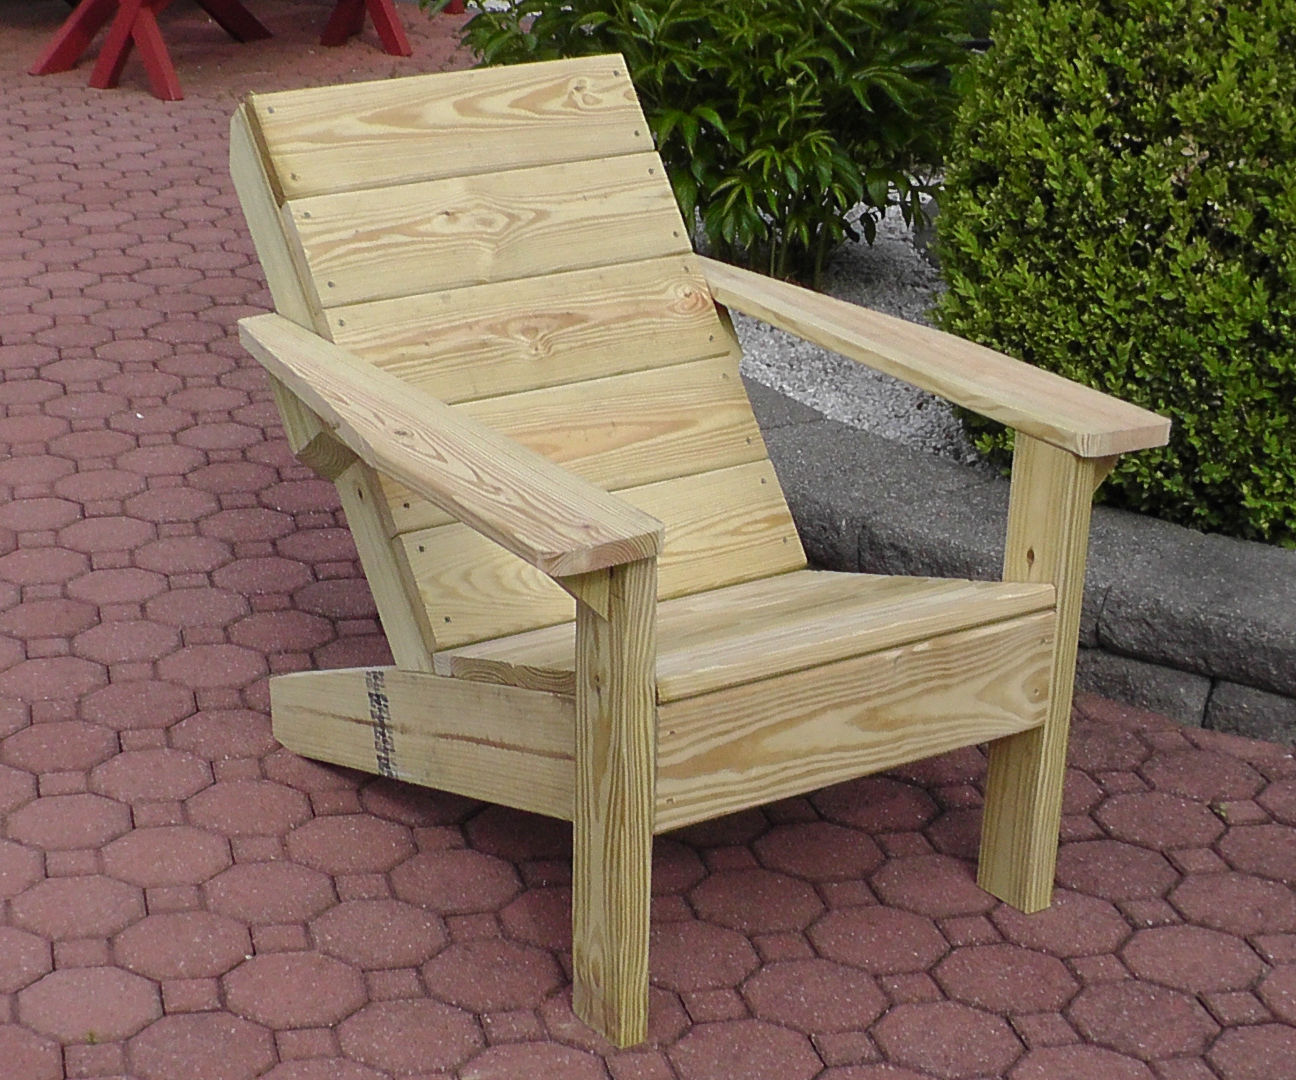 $40 Backyard Chair